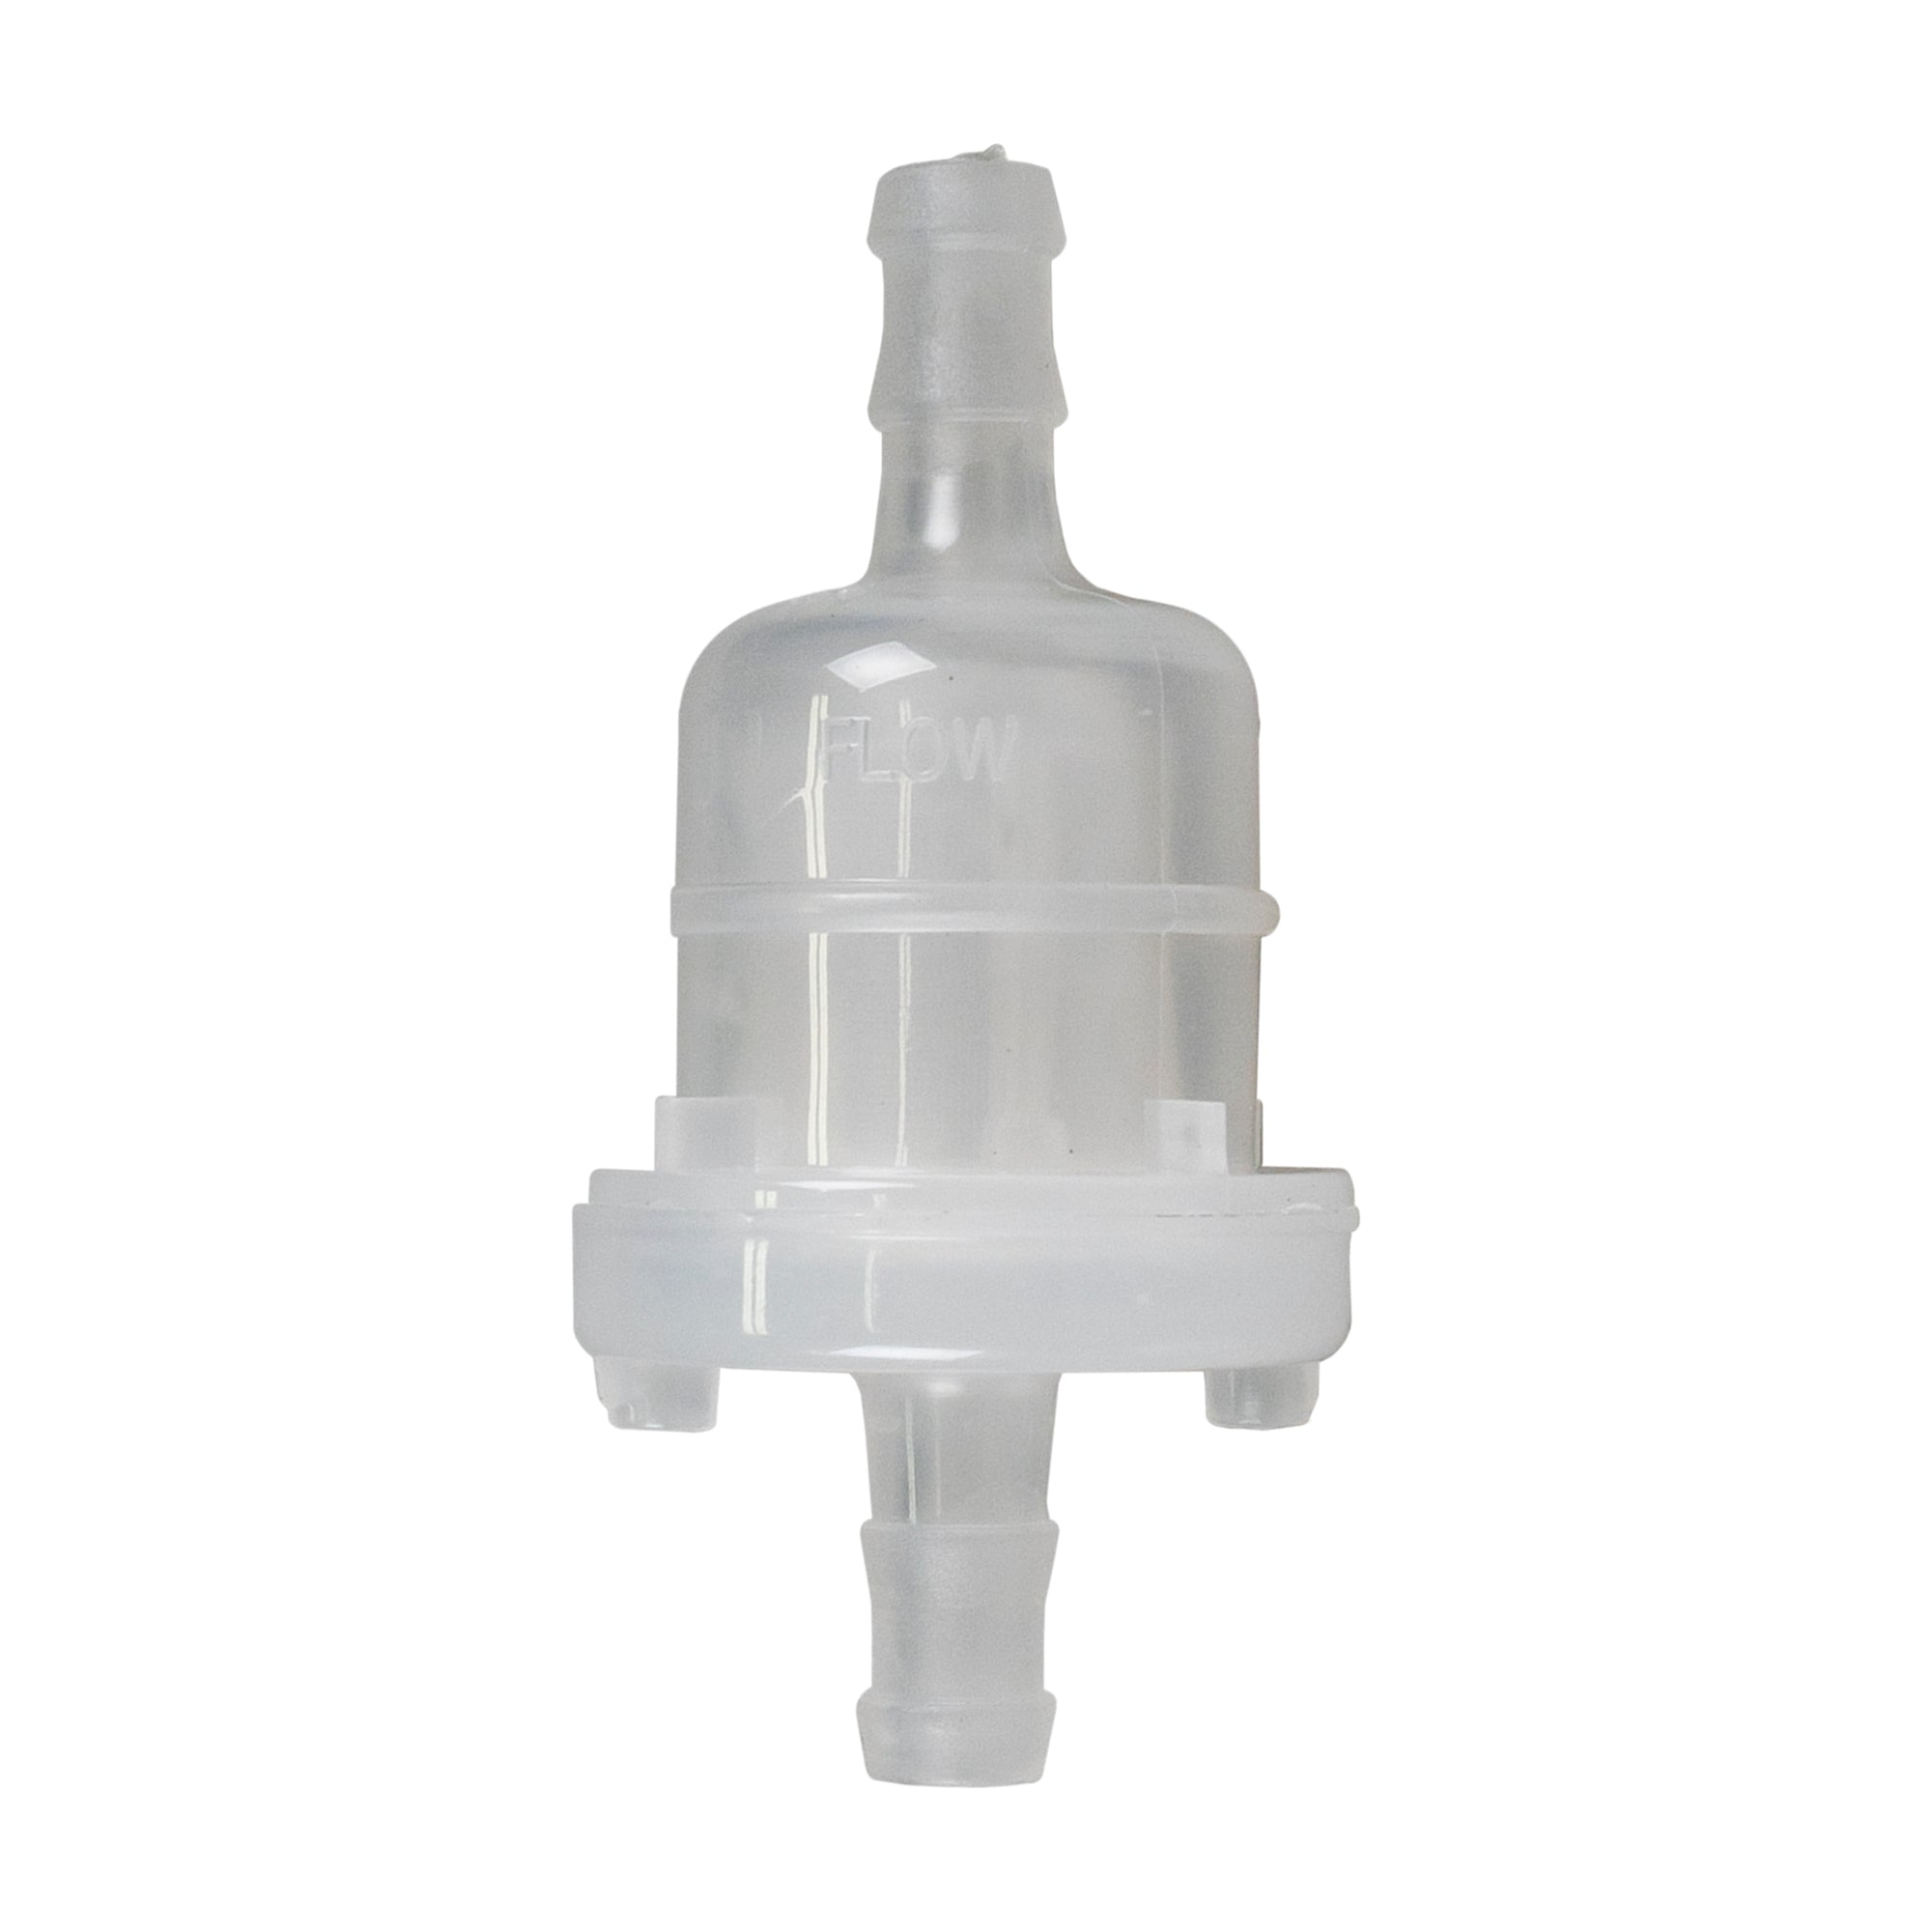 Cylinder Piston Gasket Filter Kit for Honda Rancher TRX350 98069-56916